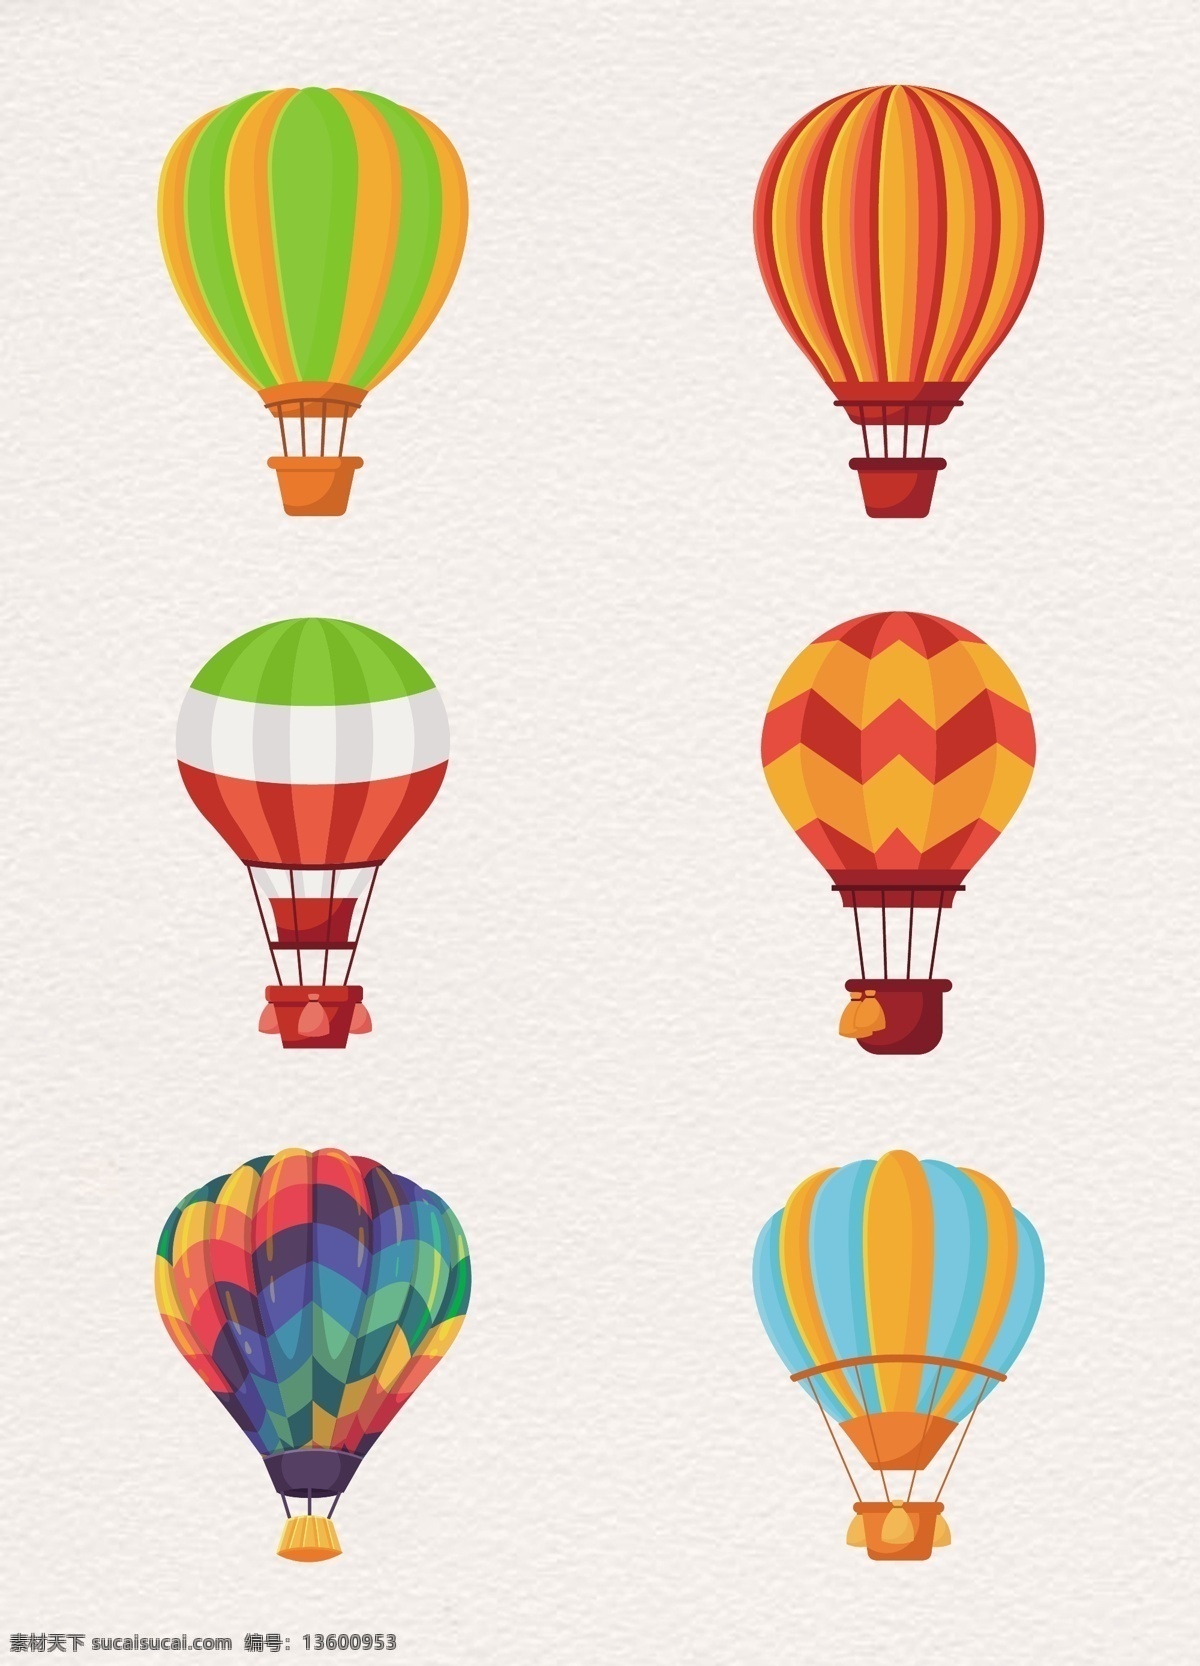 通用 节日 多彩 活动 宣传 热气球 漂浮 元素 气球 旅行 彩色 飞翔 节假日海报 氢气球 开业典礼 多彩热气球